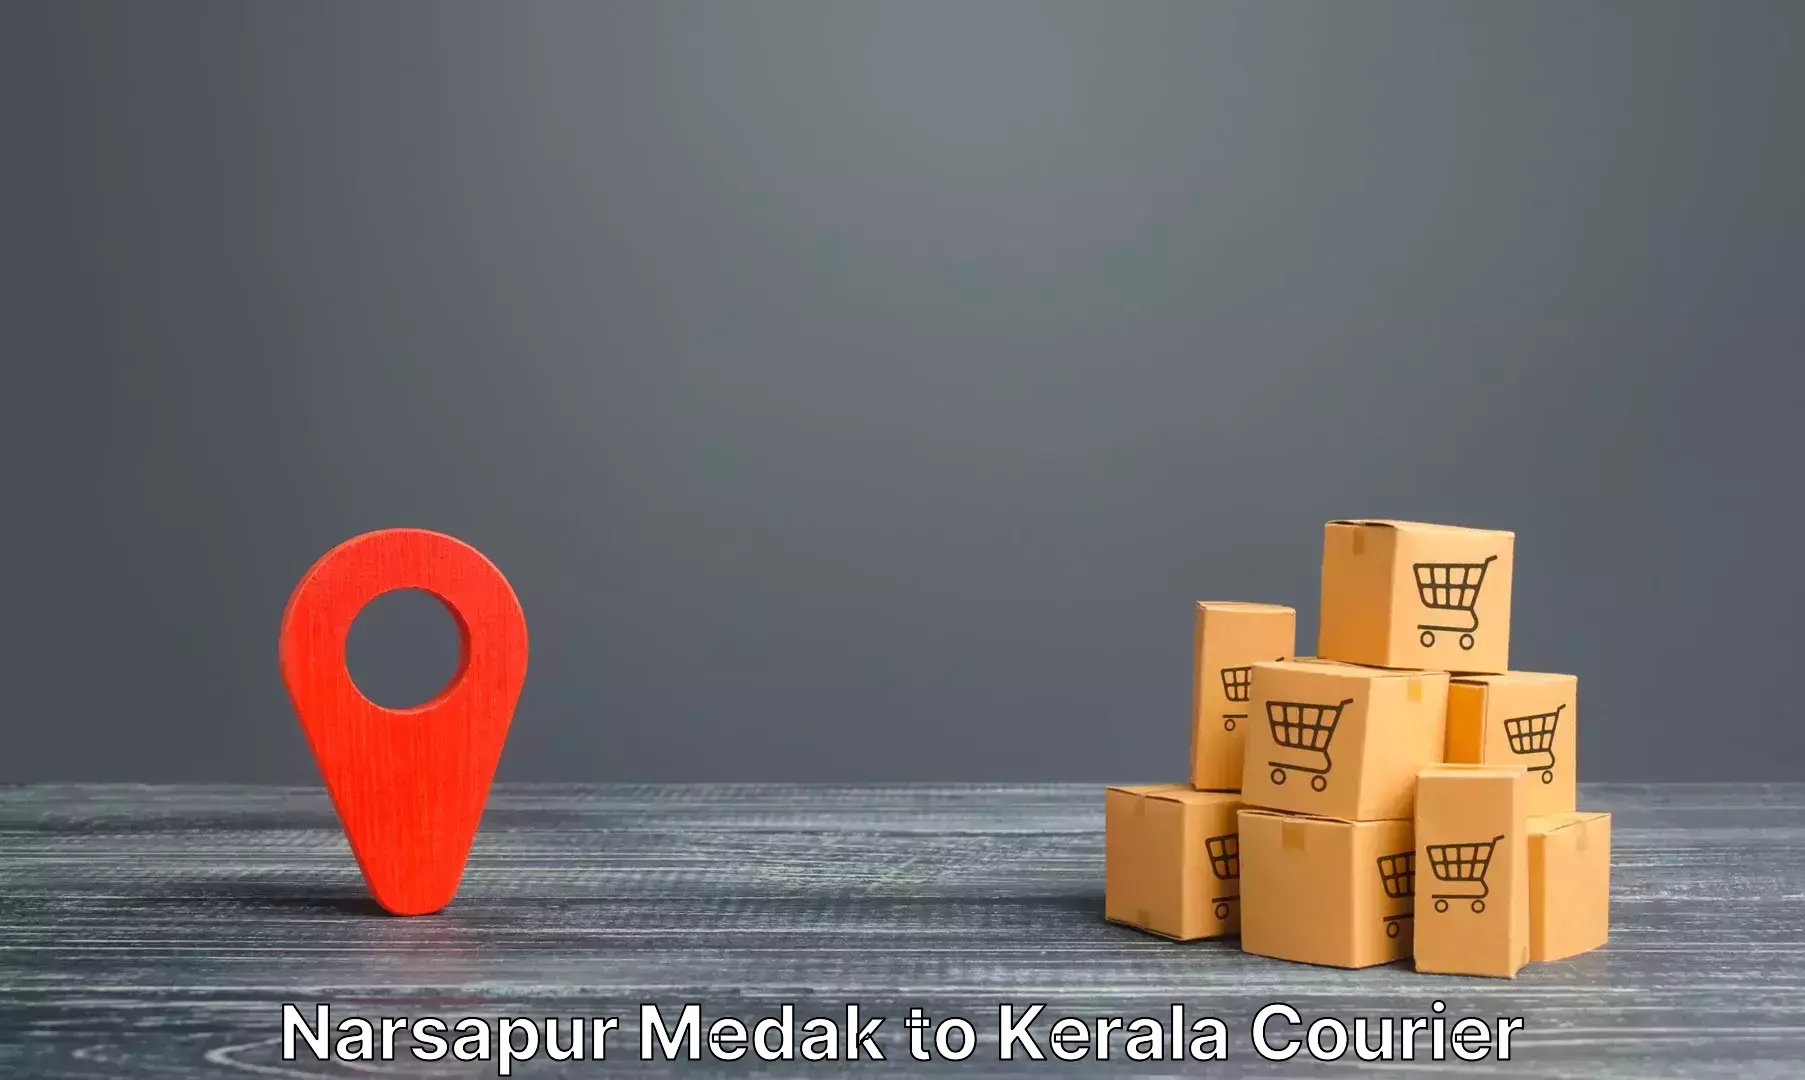 Express luggage delivery Narsapur Medak to Kothamangalam